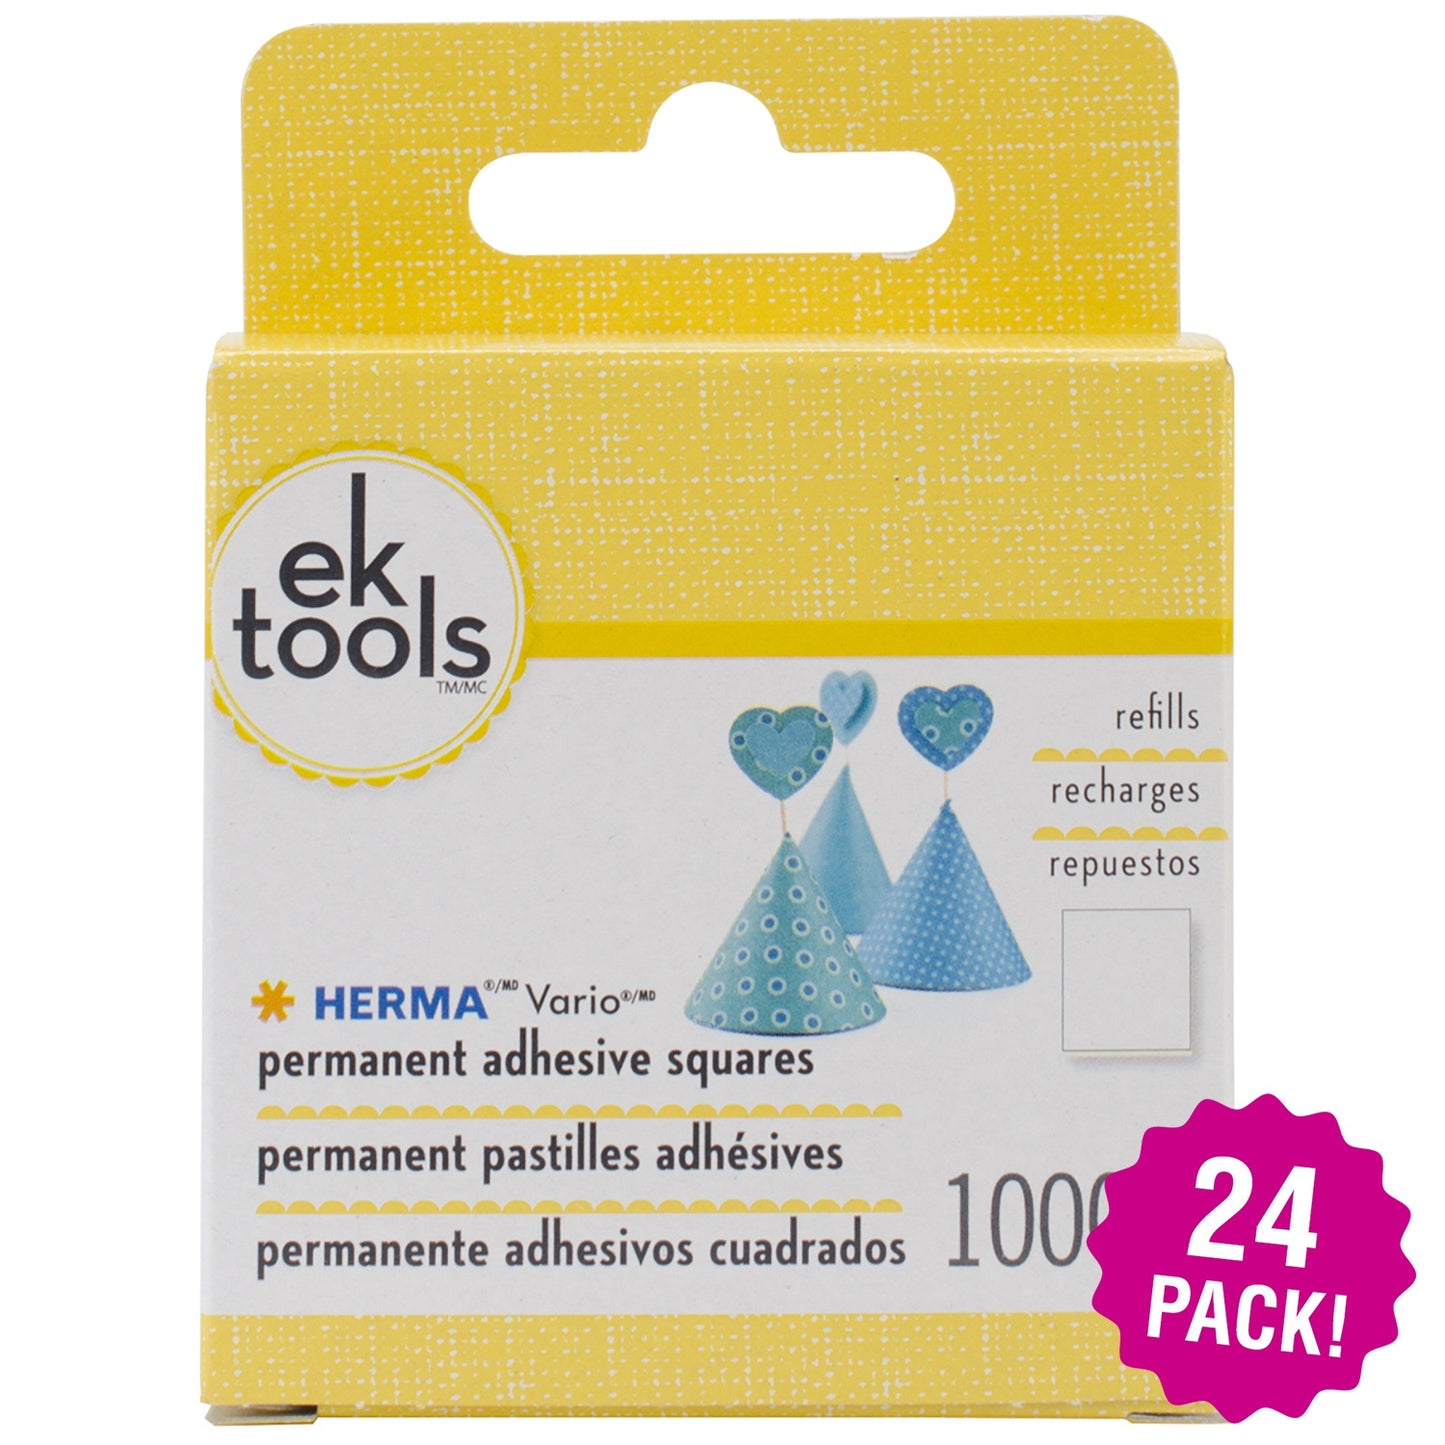 Multipack of 24 - EK Tools HERMA Vario Adhesive Tab Refill Permanent-Permanent-1000pcs, For E5501074